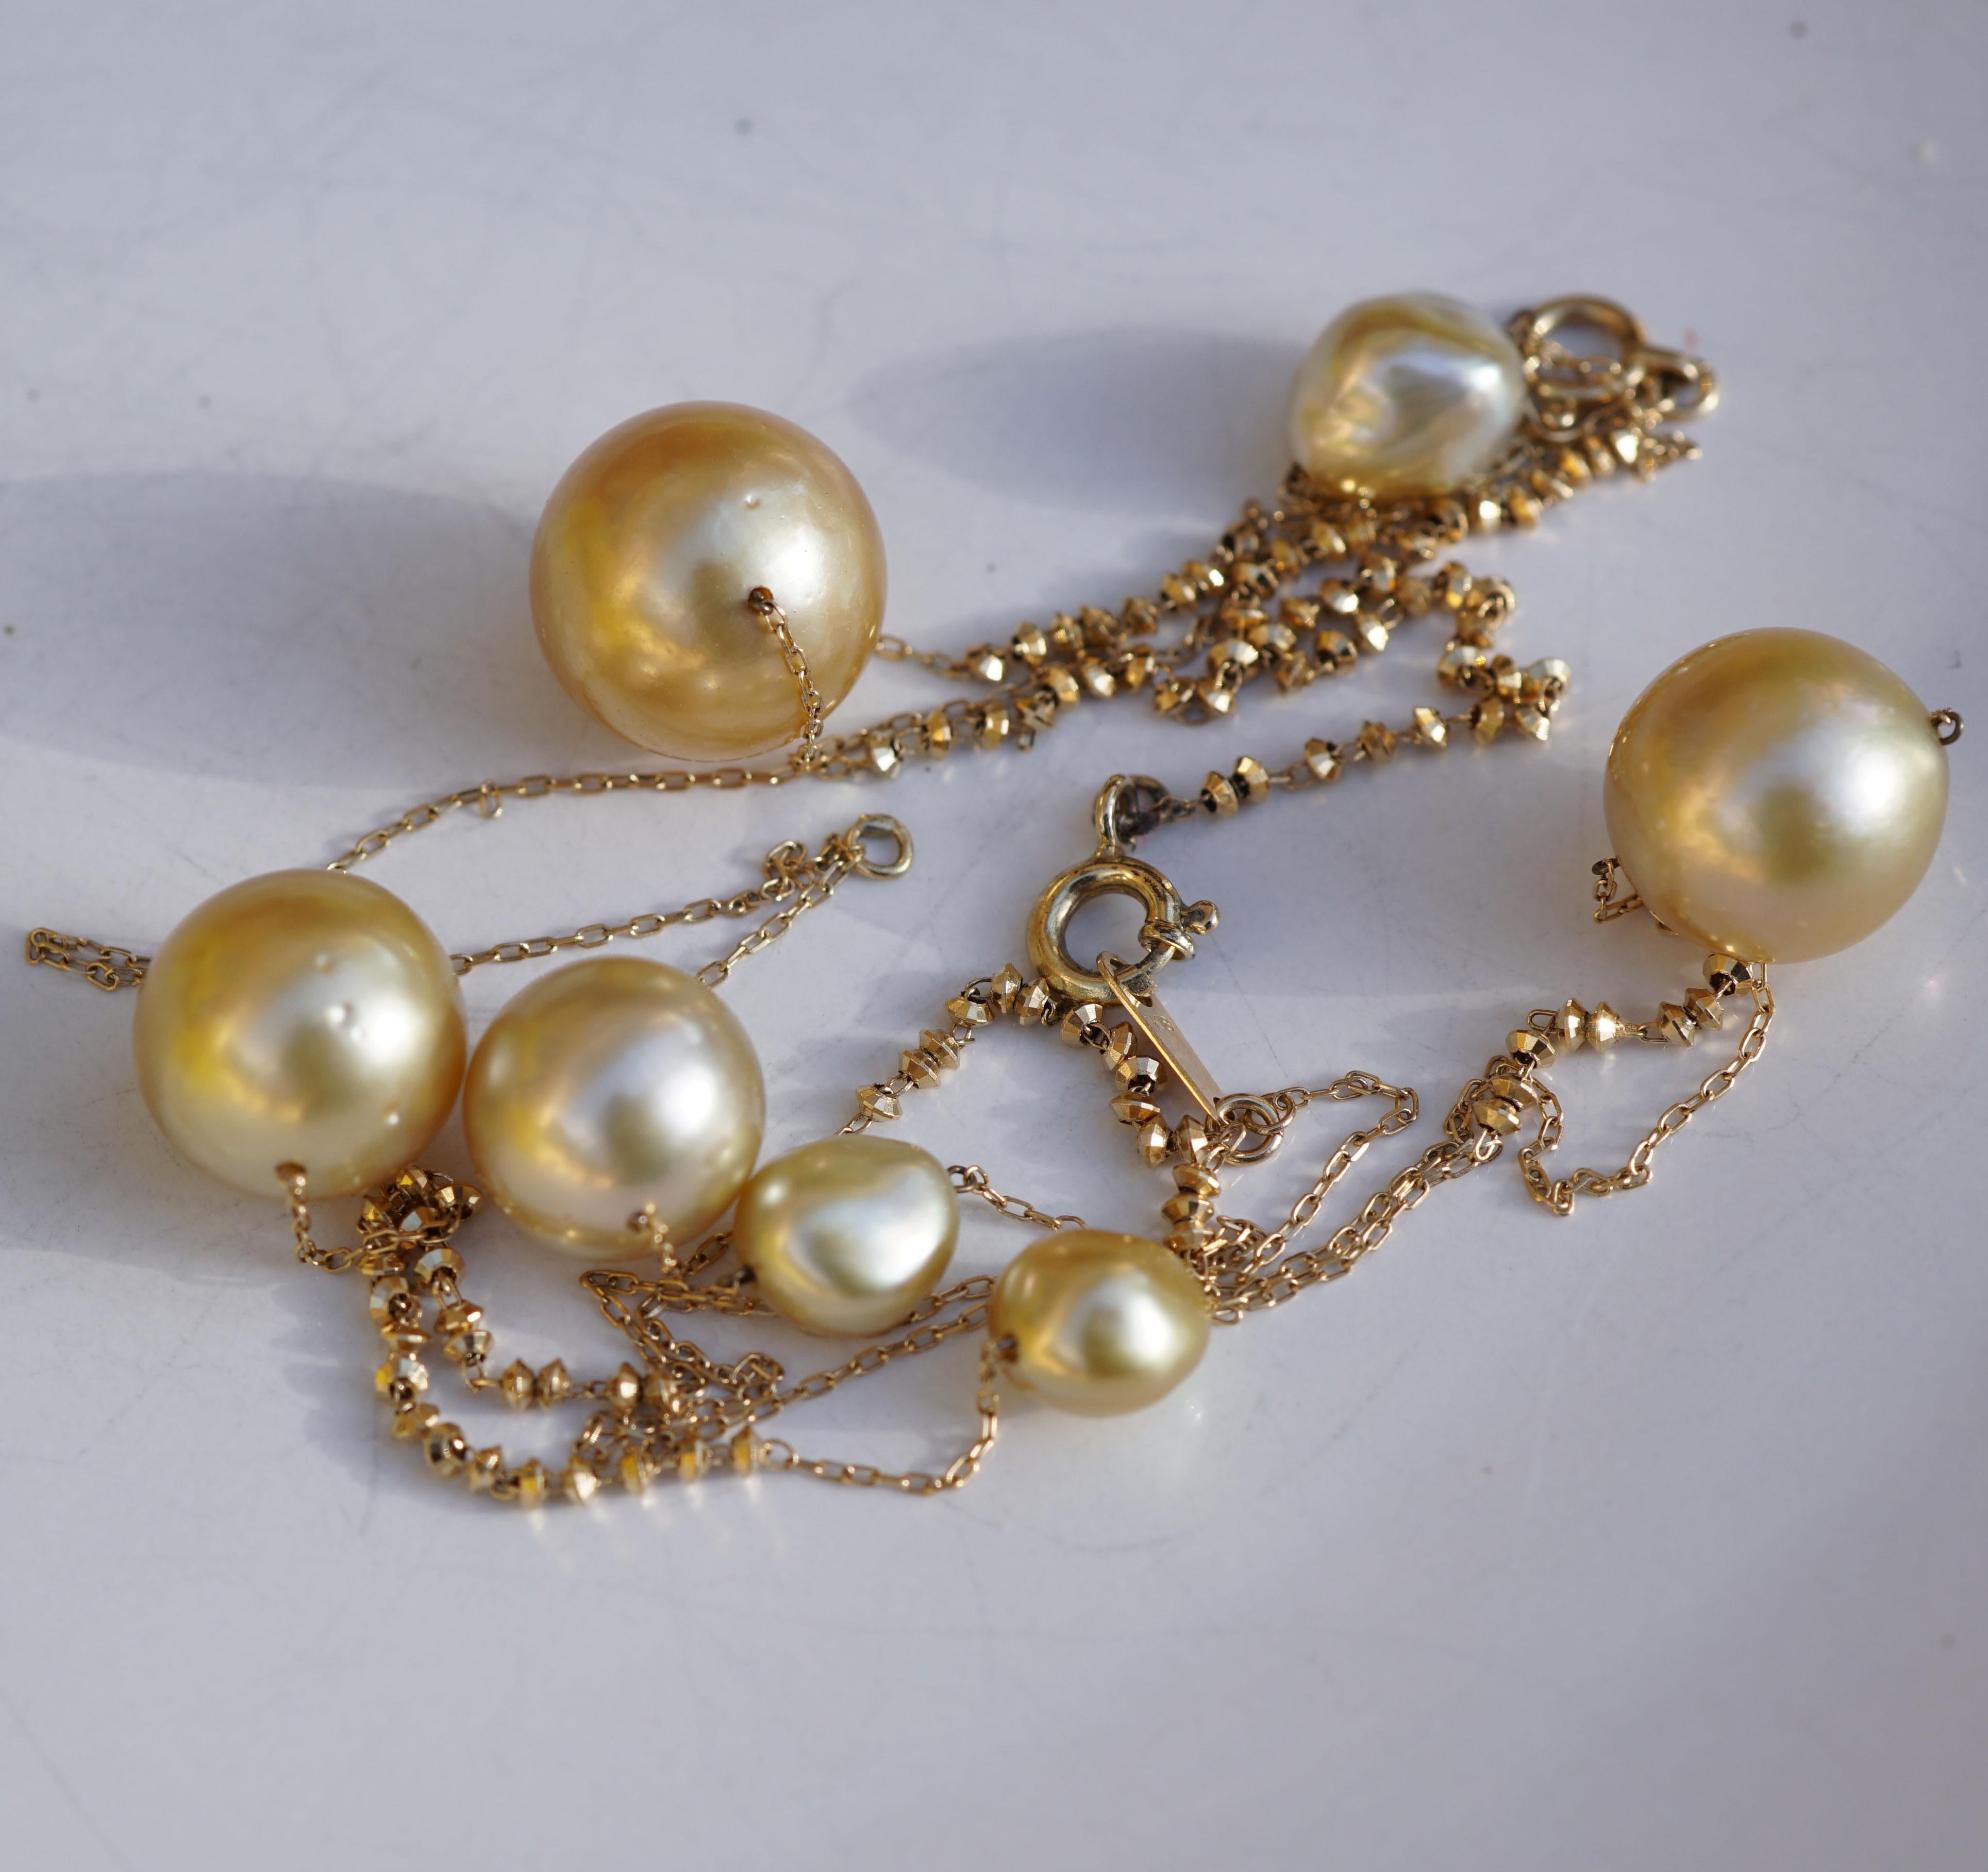 Halskette und Armband zusammen an einer langen Kette mit 75 cm, Gewicht insgesamt 12 Gramm, 7 sehr feine Südsee- und Salzwasser-Keshi-Perlen (6,3-12,45 mm), tolle natürliche Goldfarbe, AAA+, handgefertigte Kette in Japan, 750er Gelbgold, dekorative